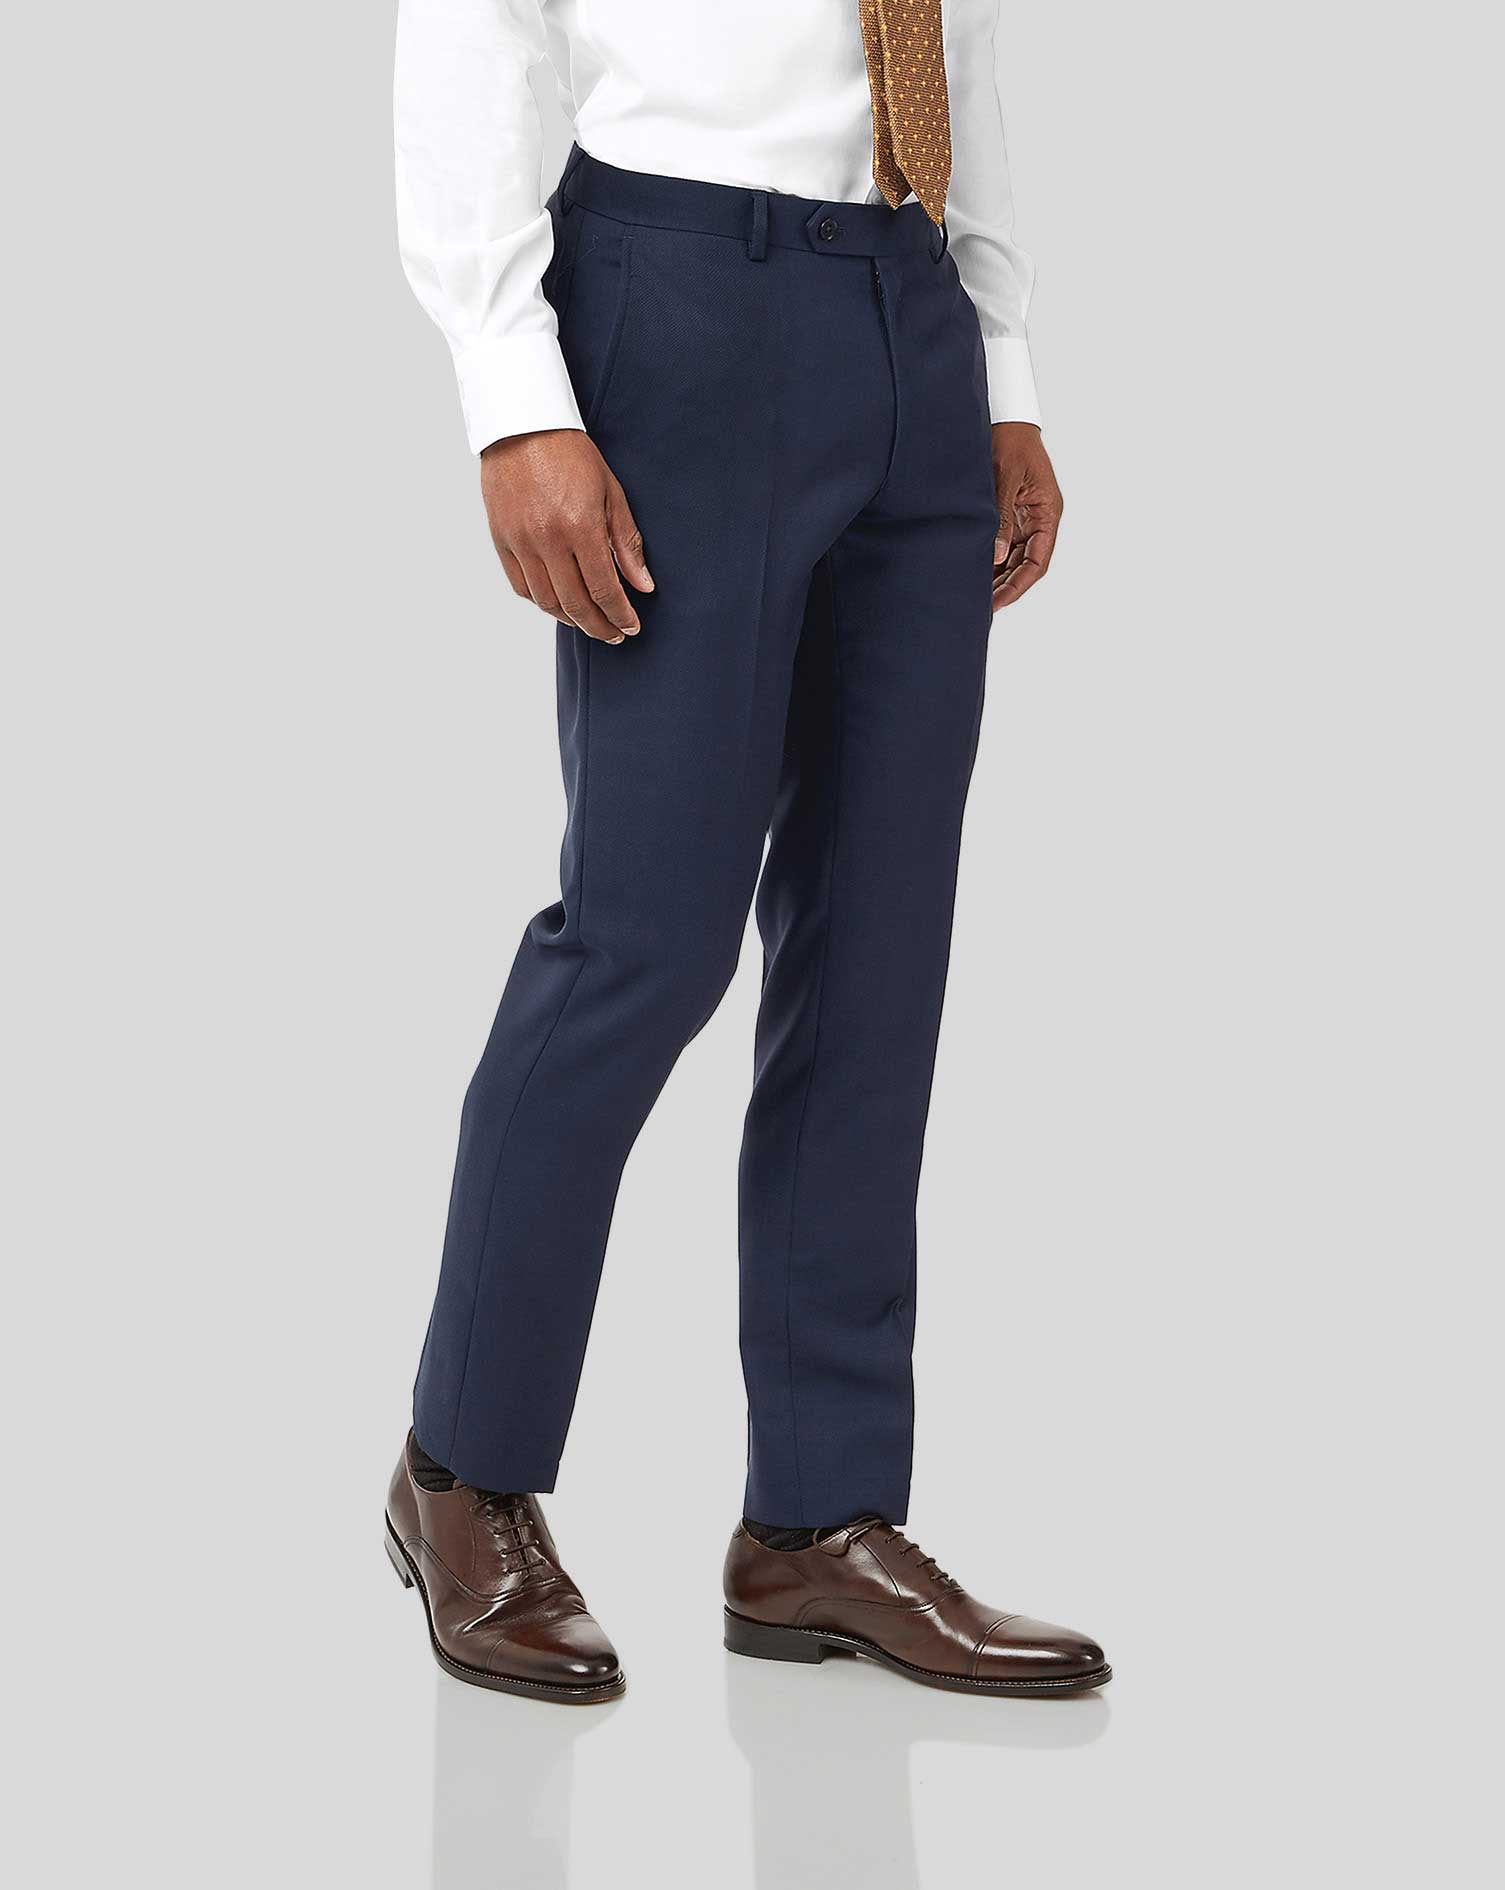 Men's Charles Tyrwhitt Birdseye Travel Suit Trousers - Ink Blue Size 40/38 Wool
